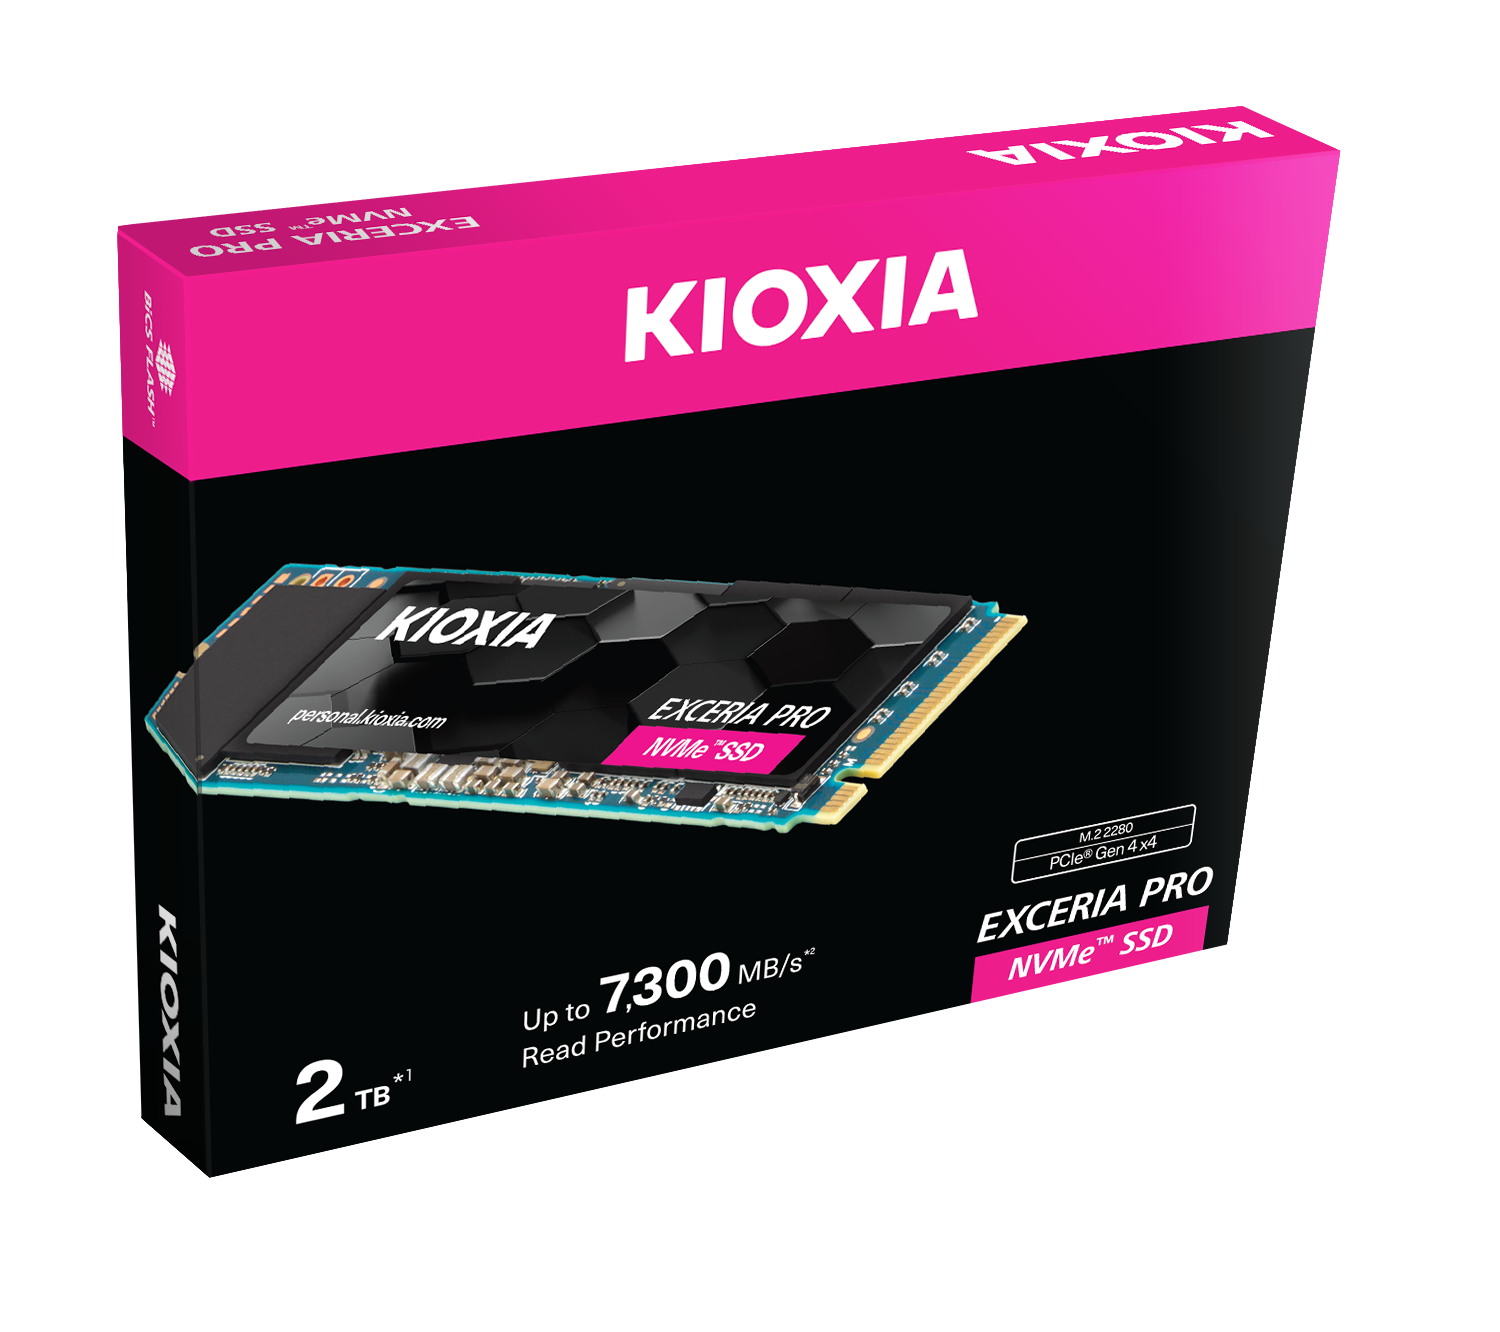 KIOXIA Exceria PRO NVME M.2. 2280 2TB RW 7300/6400 MB/s